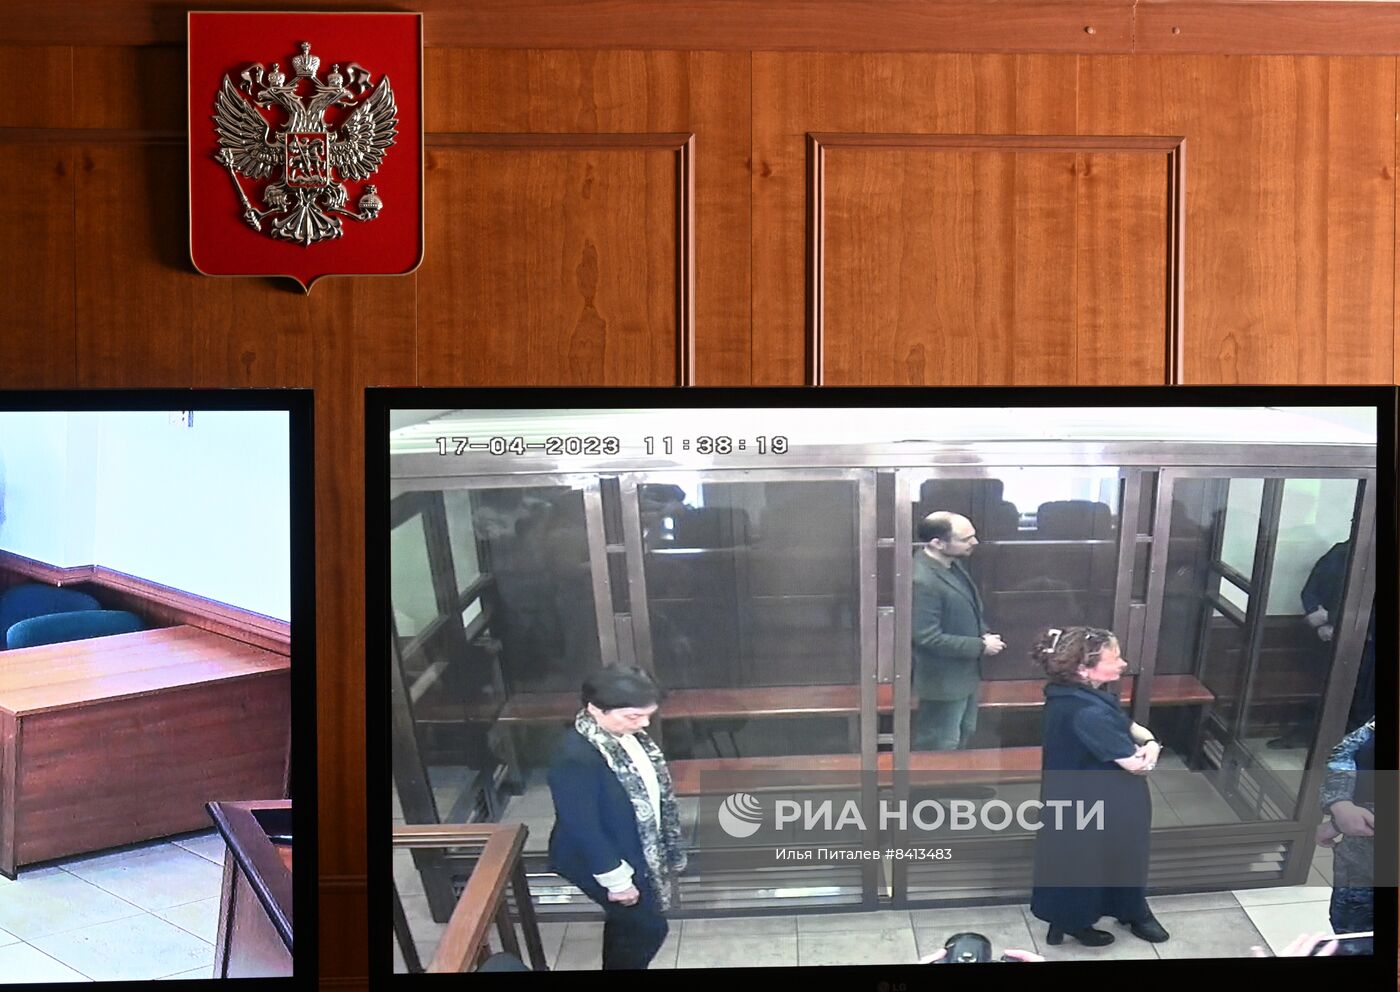 Оглашение приговора В. Кара-Мурзе по делу о госизмене и распространении фейков про ВС РФ